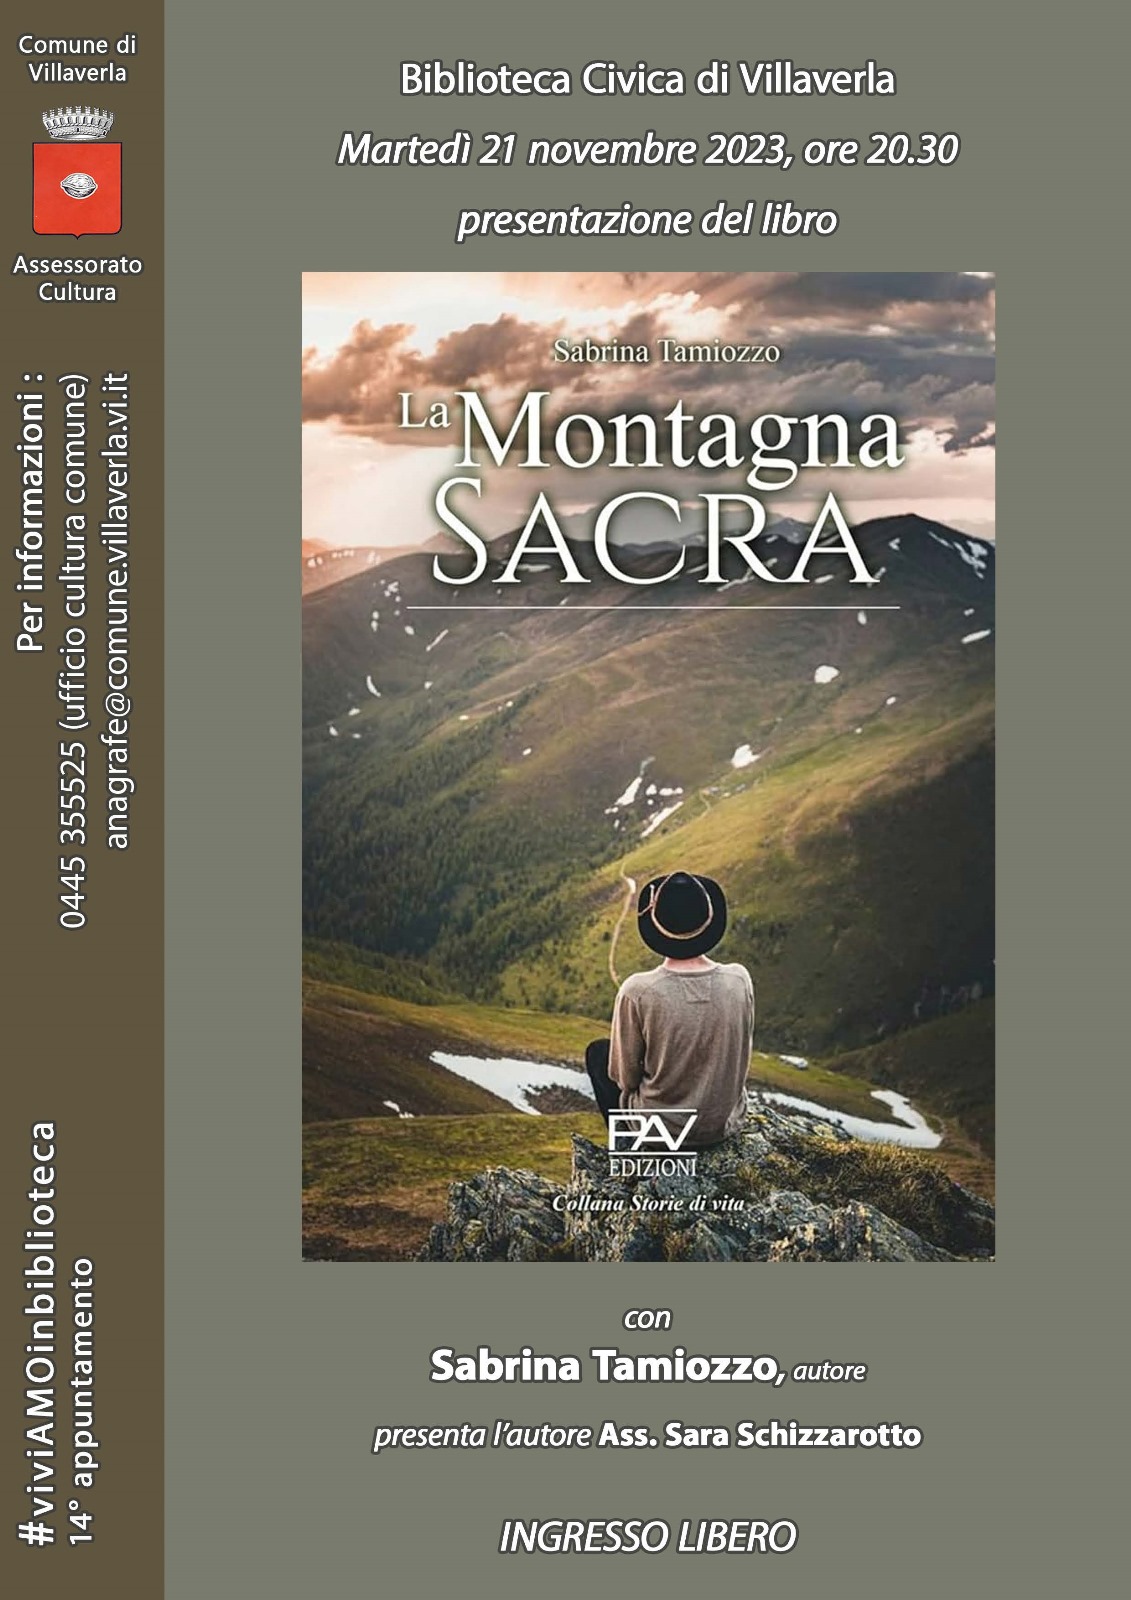 Copertina del libro di colore marrone raffigurante uomo seduto sulla vetta di una montagna che contempla l'orizzonte